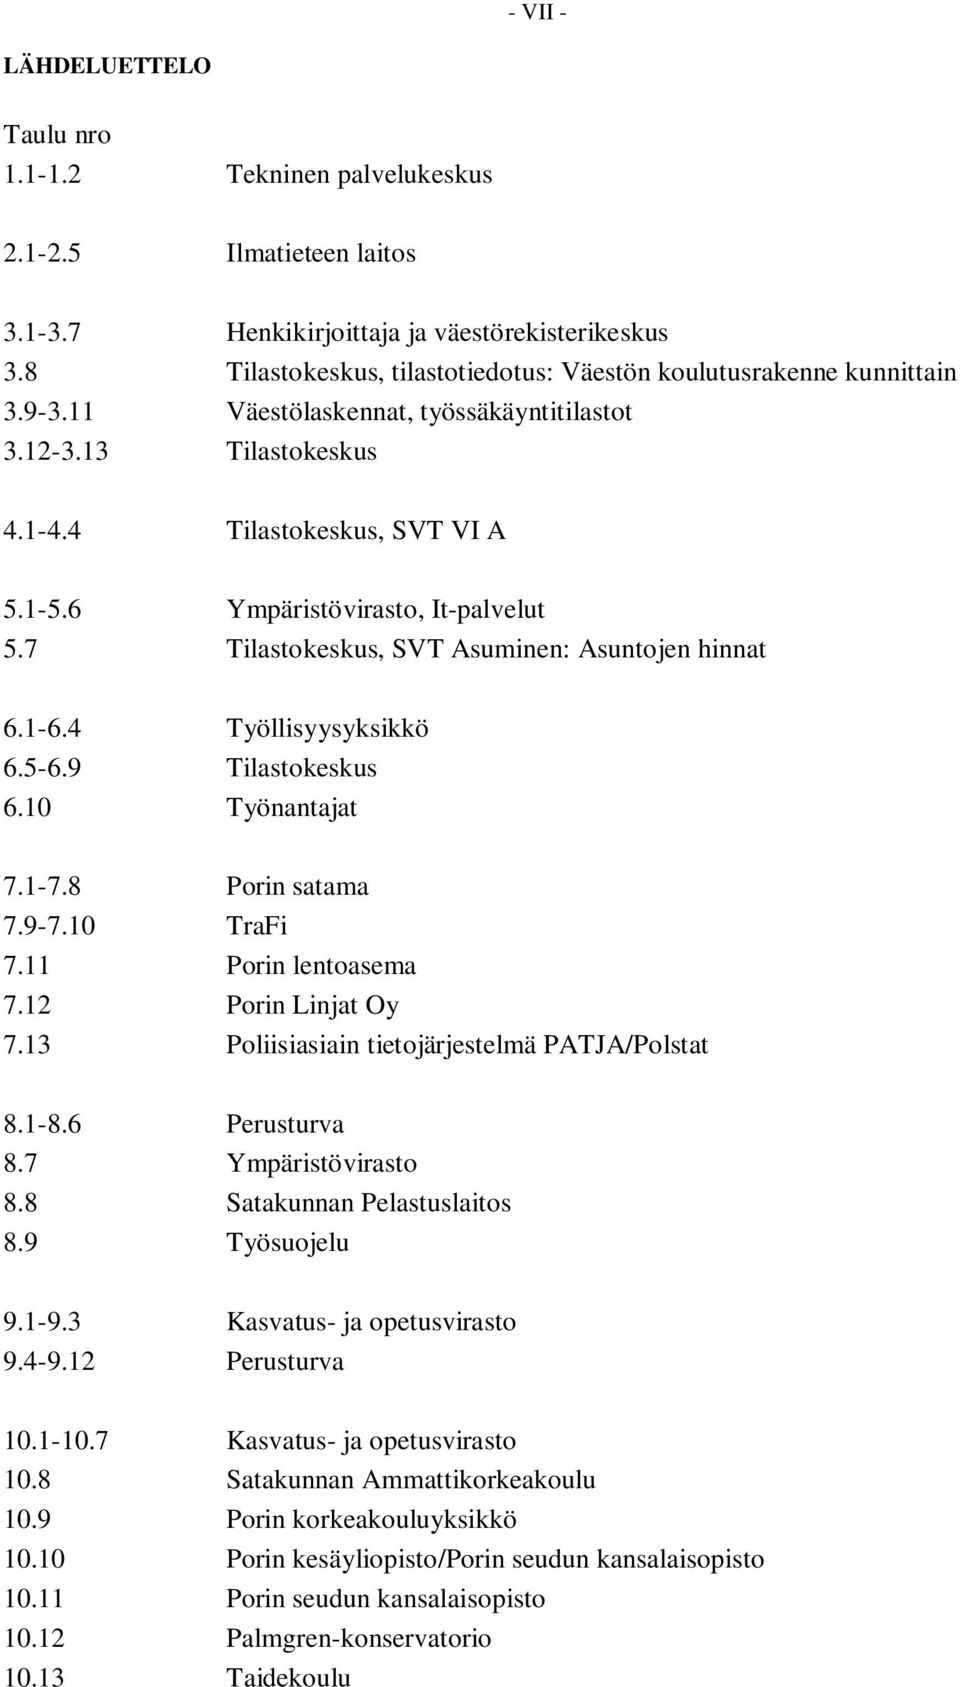 6 Ympäristövirasto, It-palvelut 5.7 Tilastokeskus, SVT Asuminen: Asuntojen hinnat 6.1-6.4 Työllisyysyksikkö 6.5-6.9 Tilastokeskus 6.10 Työnantajat 7.1-7.8 Porin satama 7.9-7.10 TraFi 7.